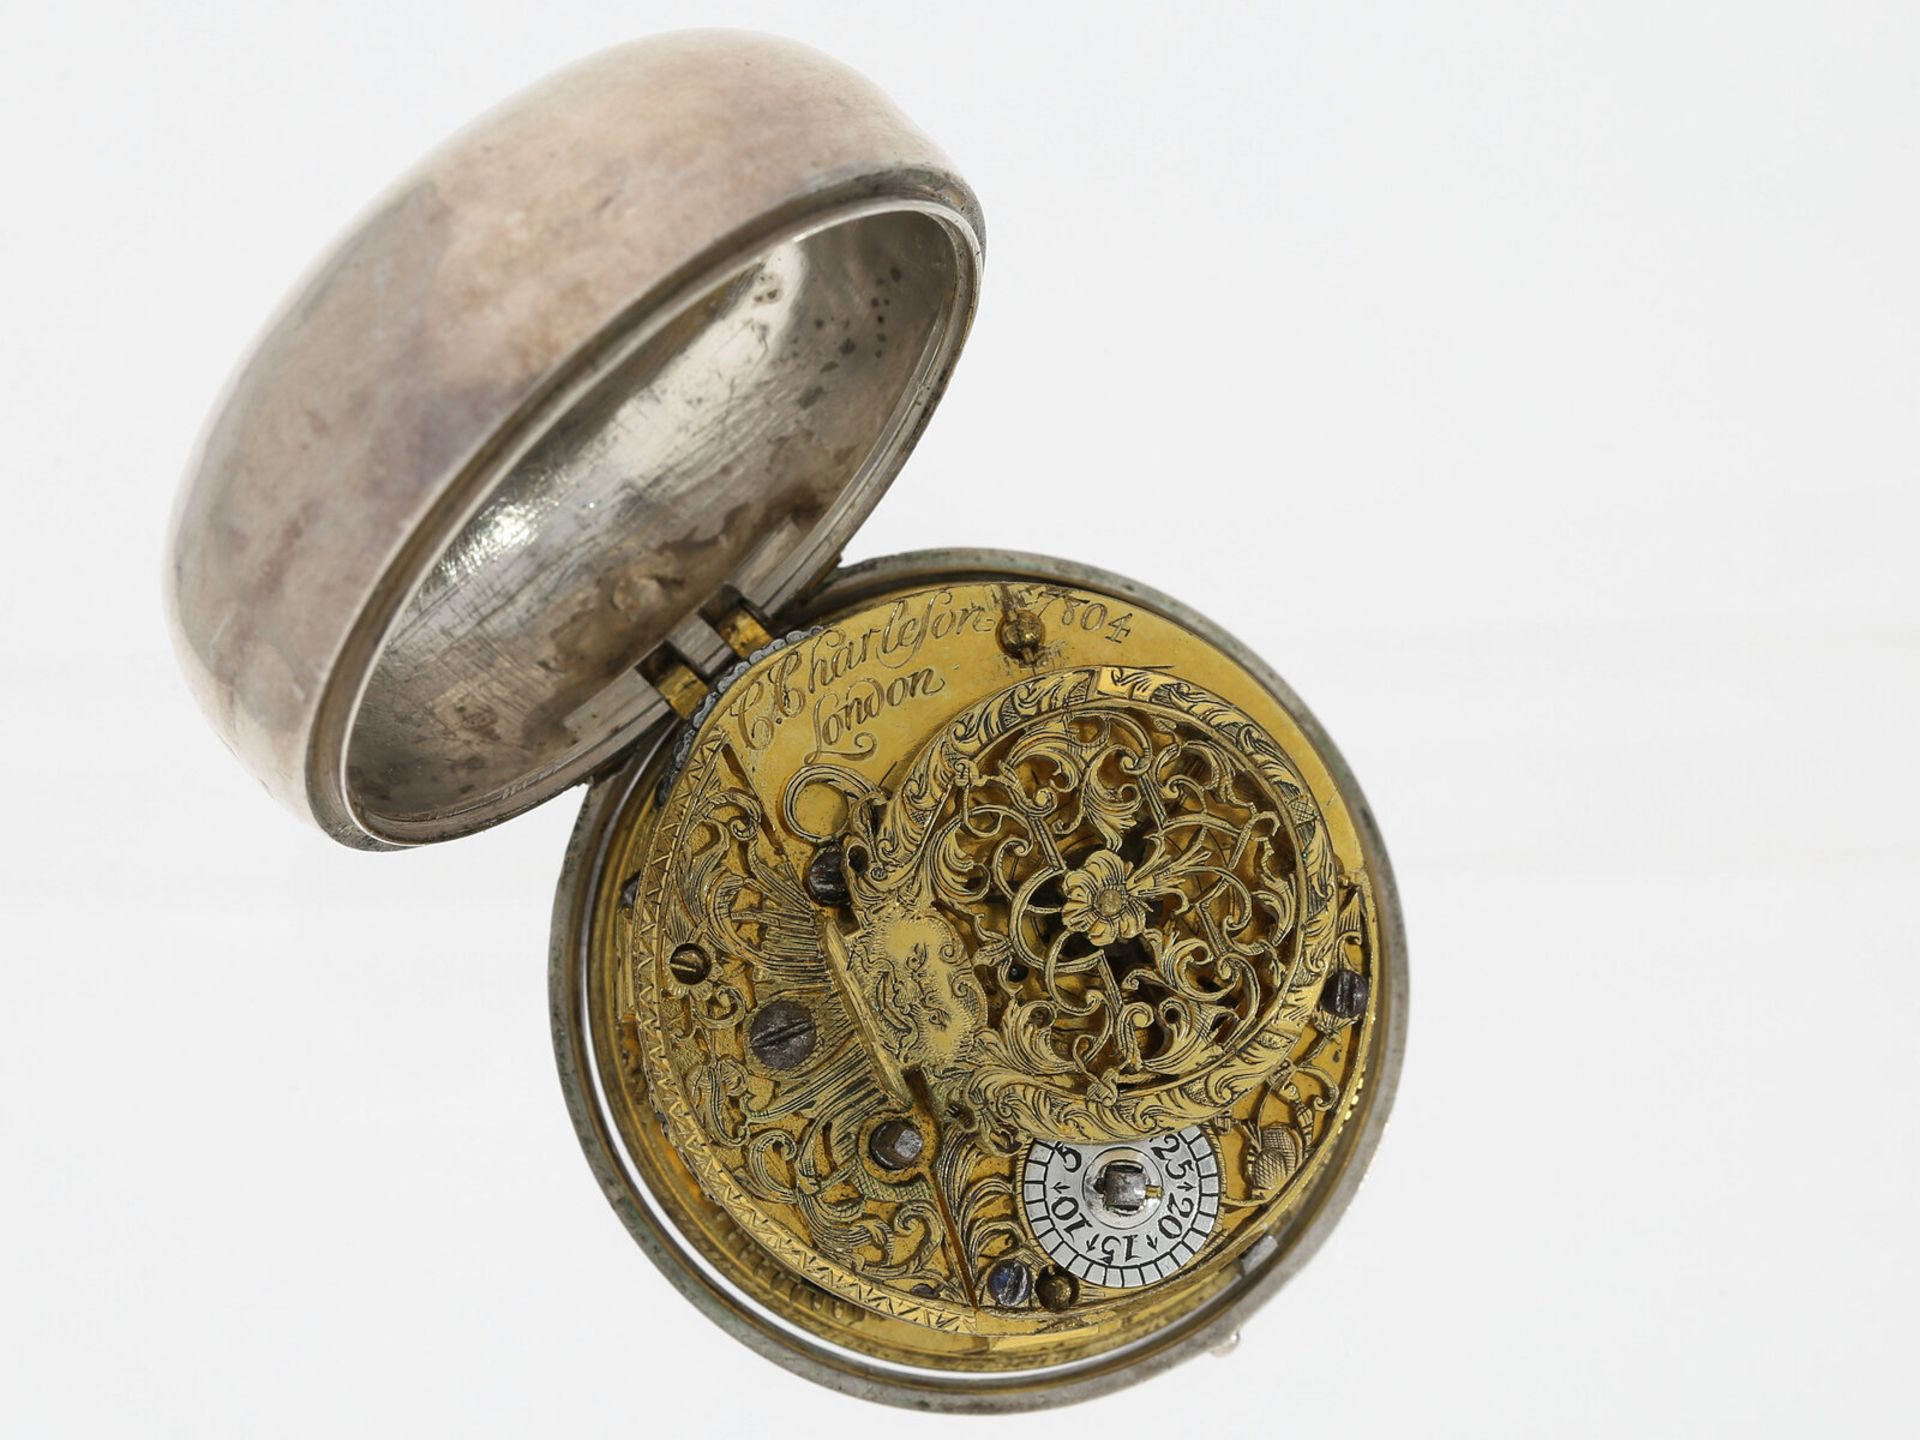 Taschenuhr: frühe Londoner Champlevé-Taschenuhr, Charleson London No. 7804, ca. 1720 - Bild 3 aus 3